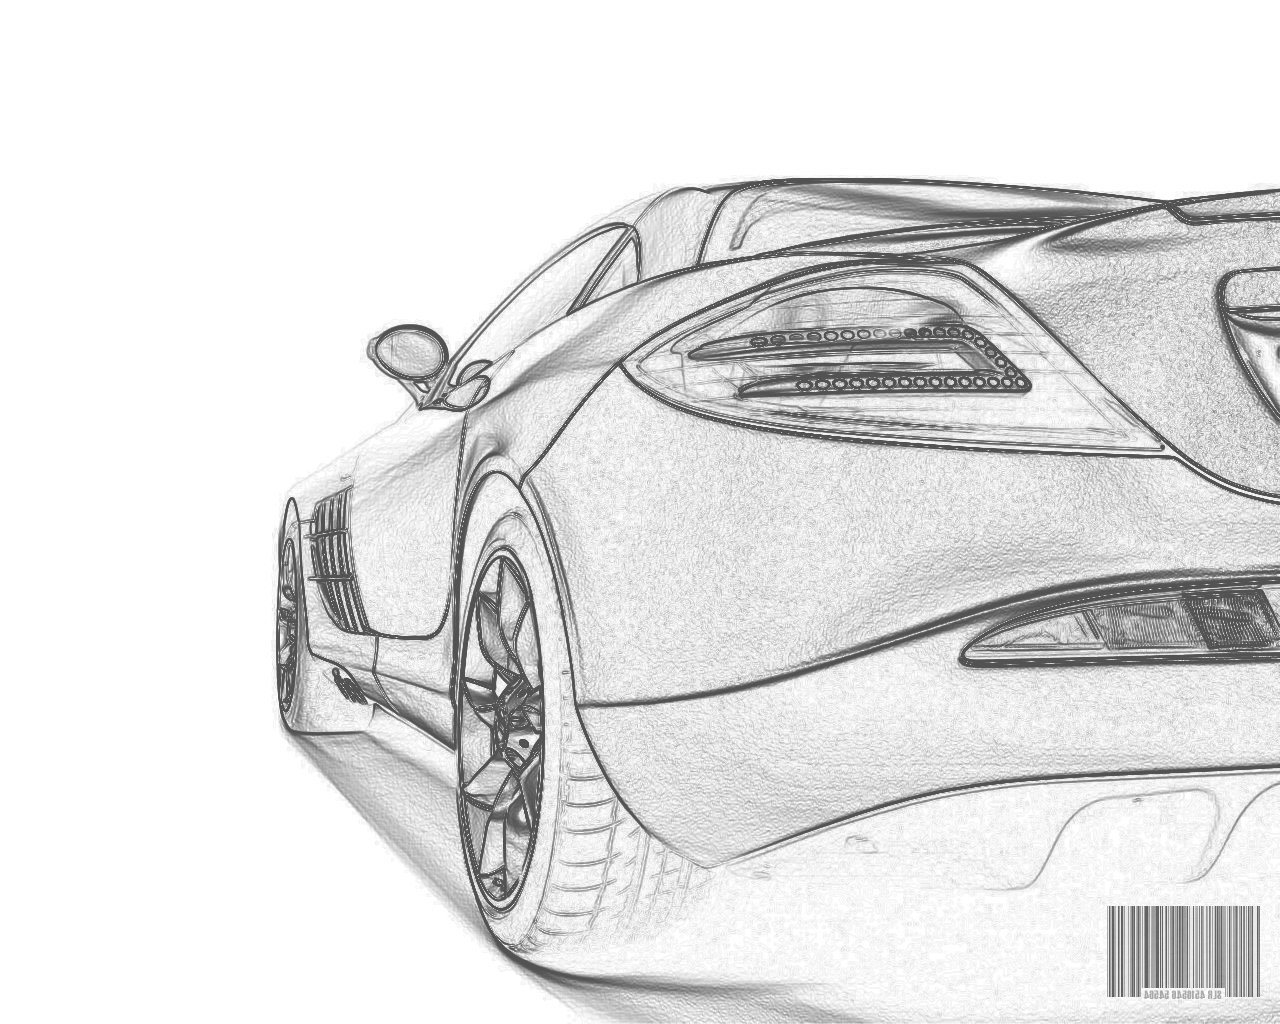 How to draw a concept car - Car Body Design